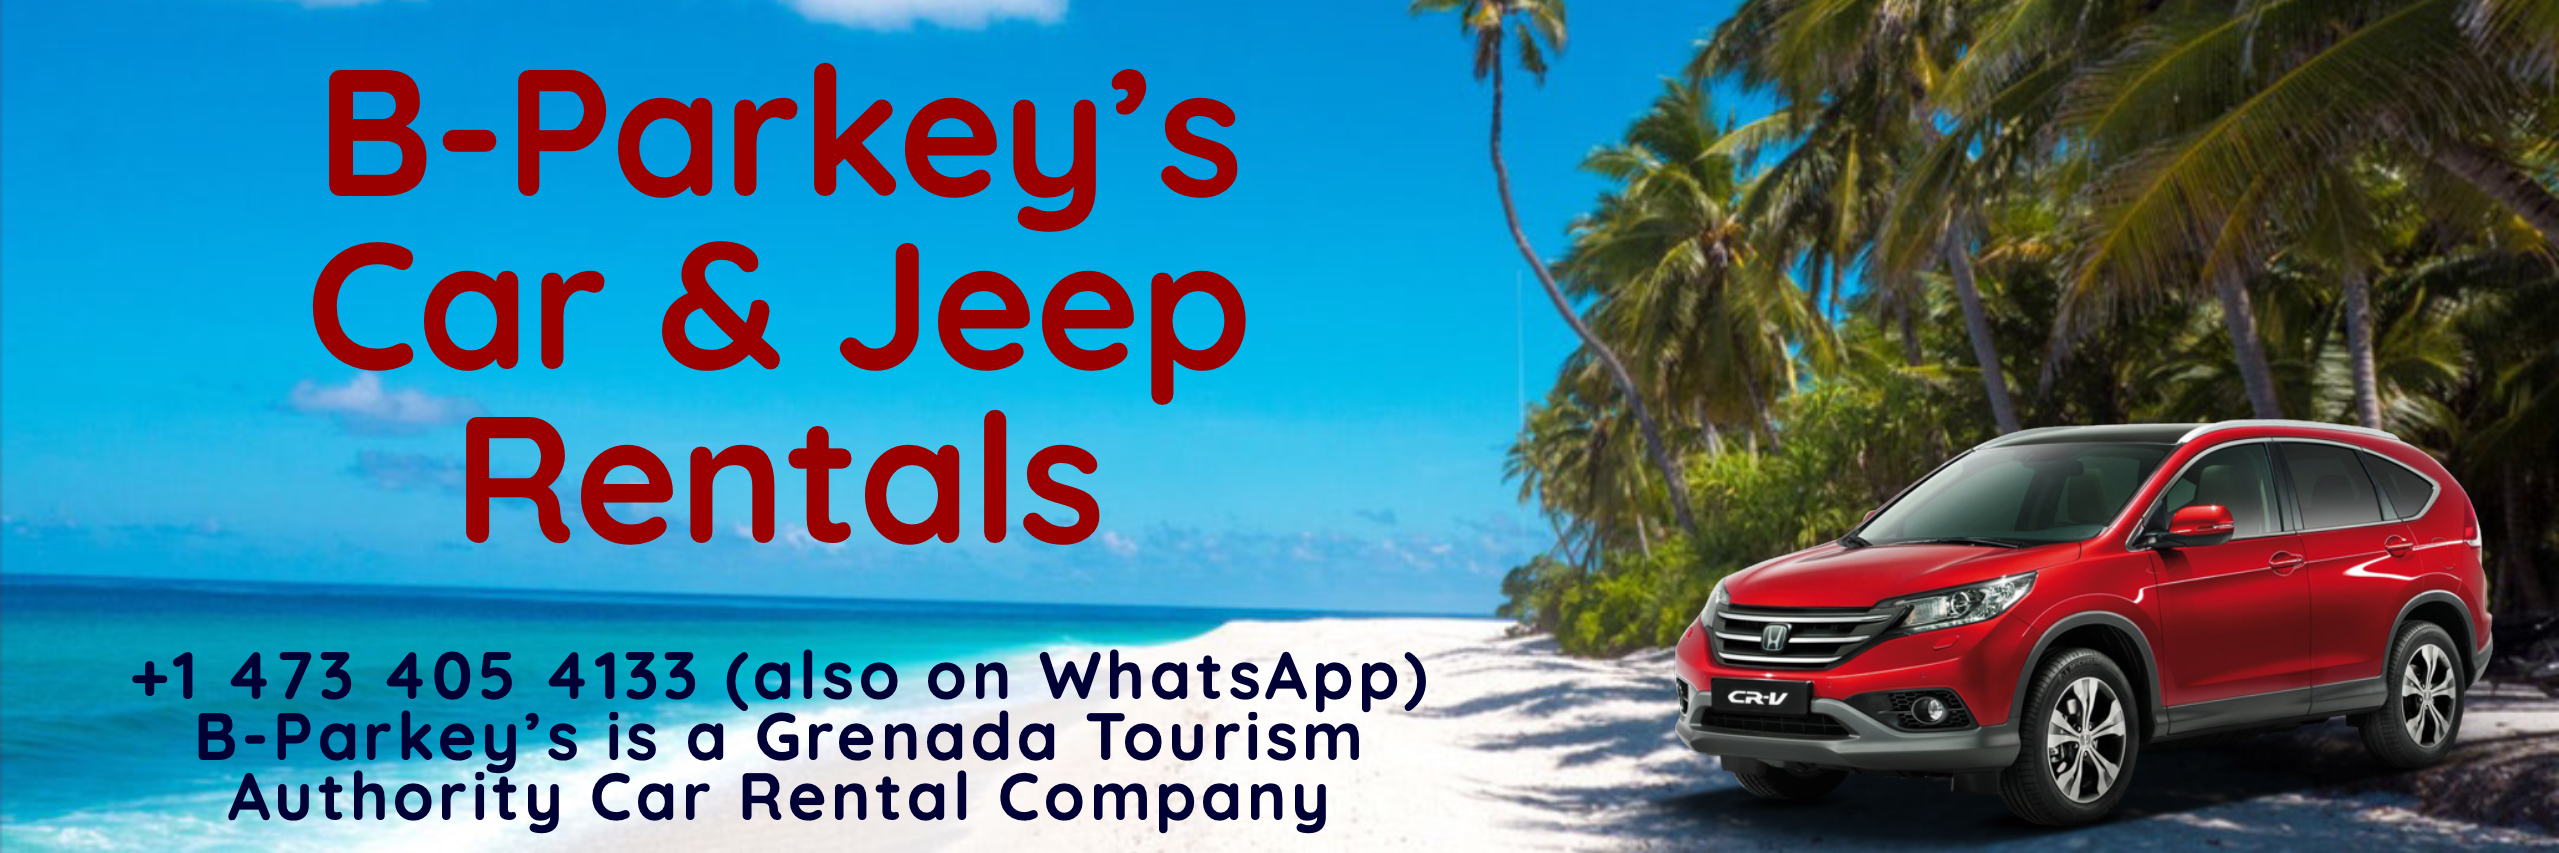 B-Parkey's Car & Jeep Rentals in Grenada